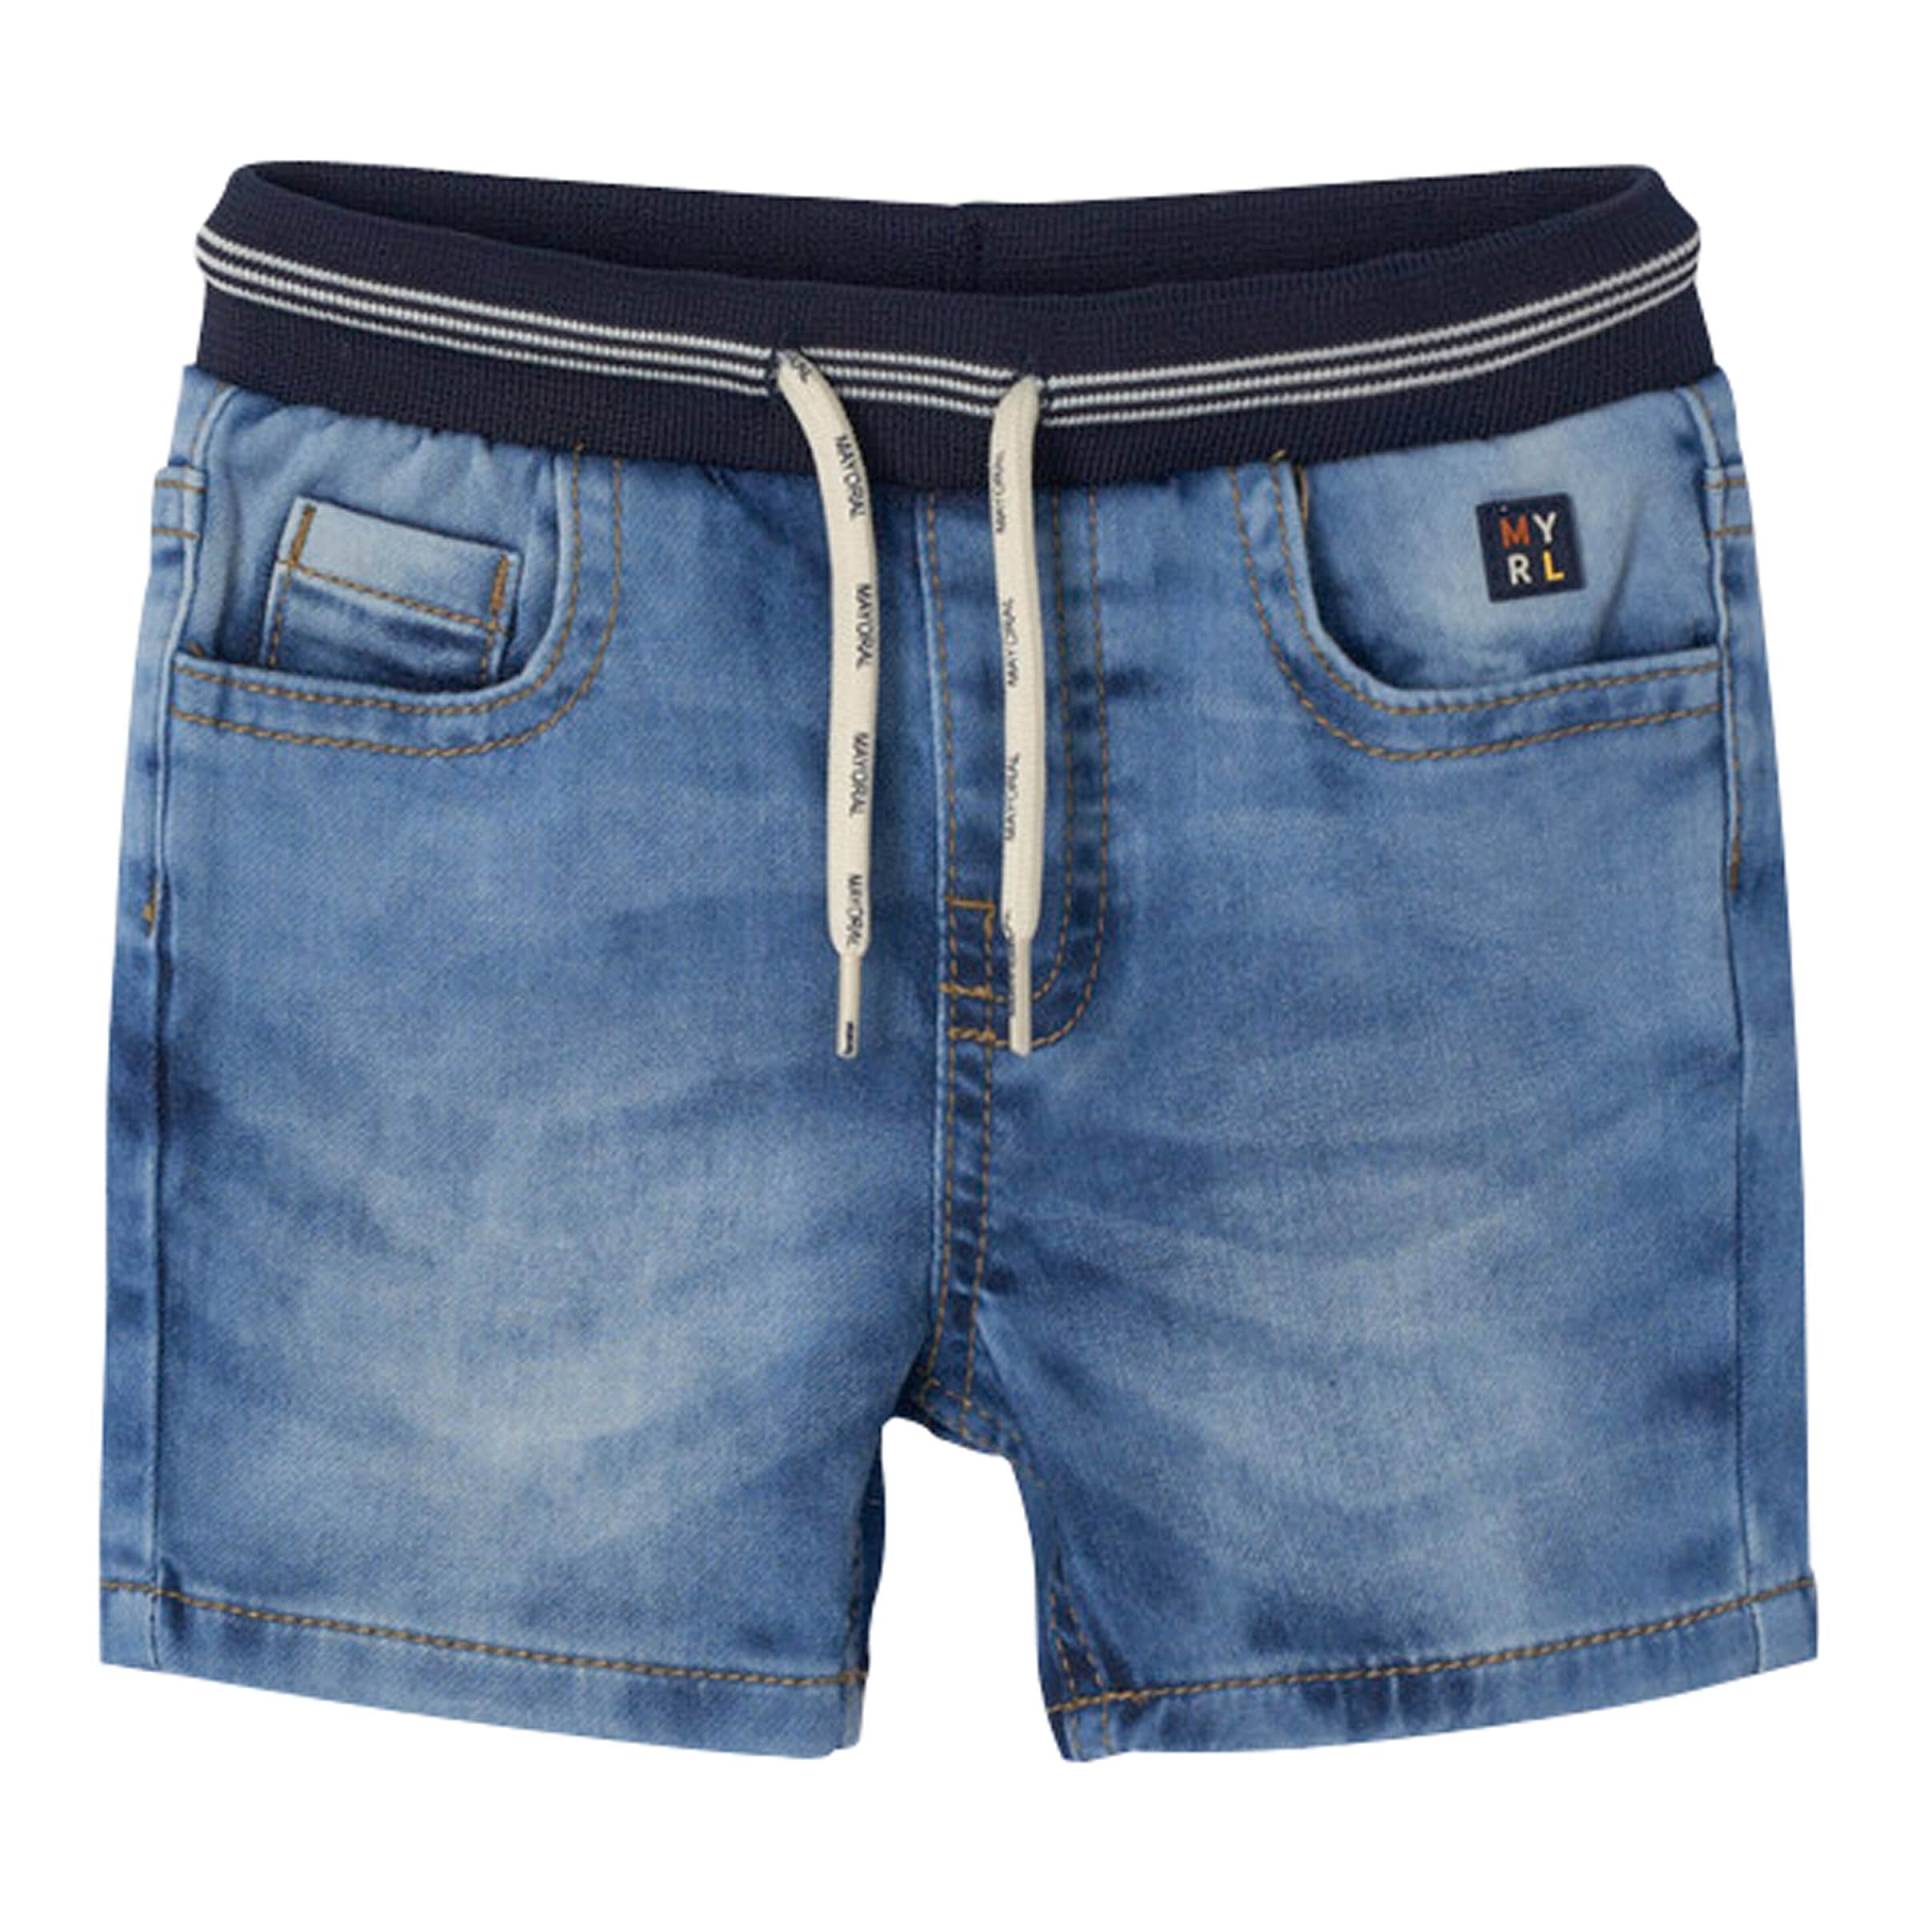 Jeans-Shorts 5 Pocket Softbund von Mayoral